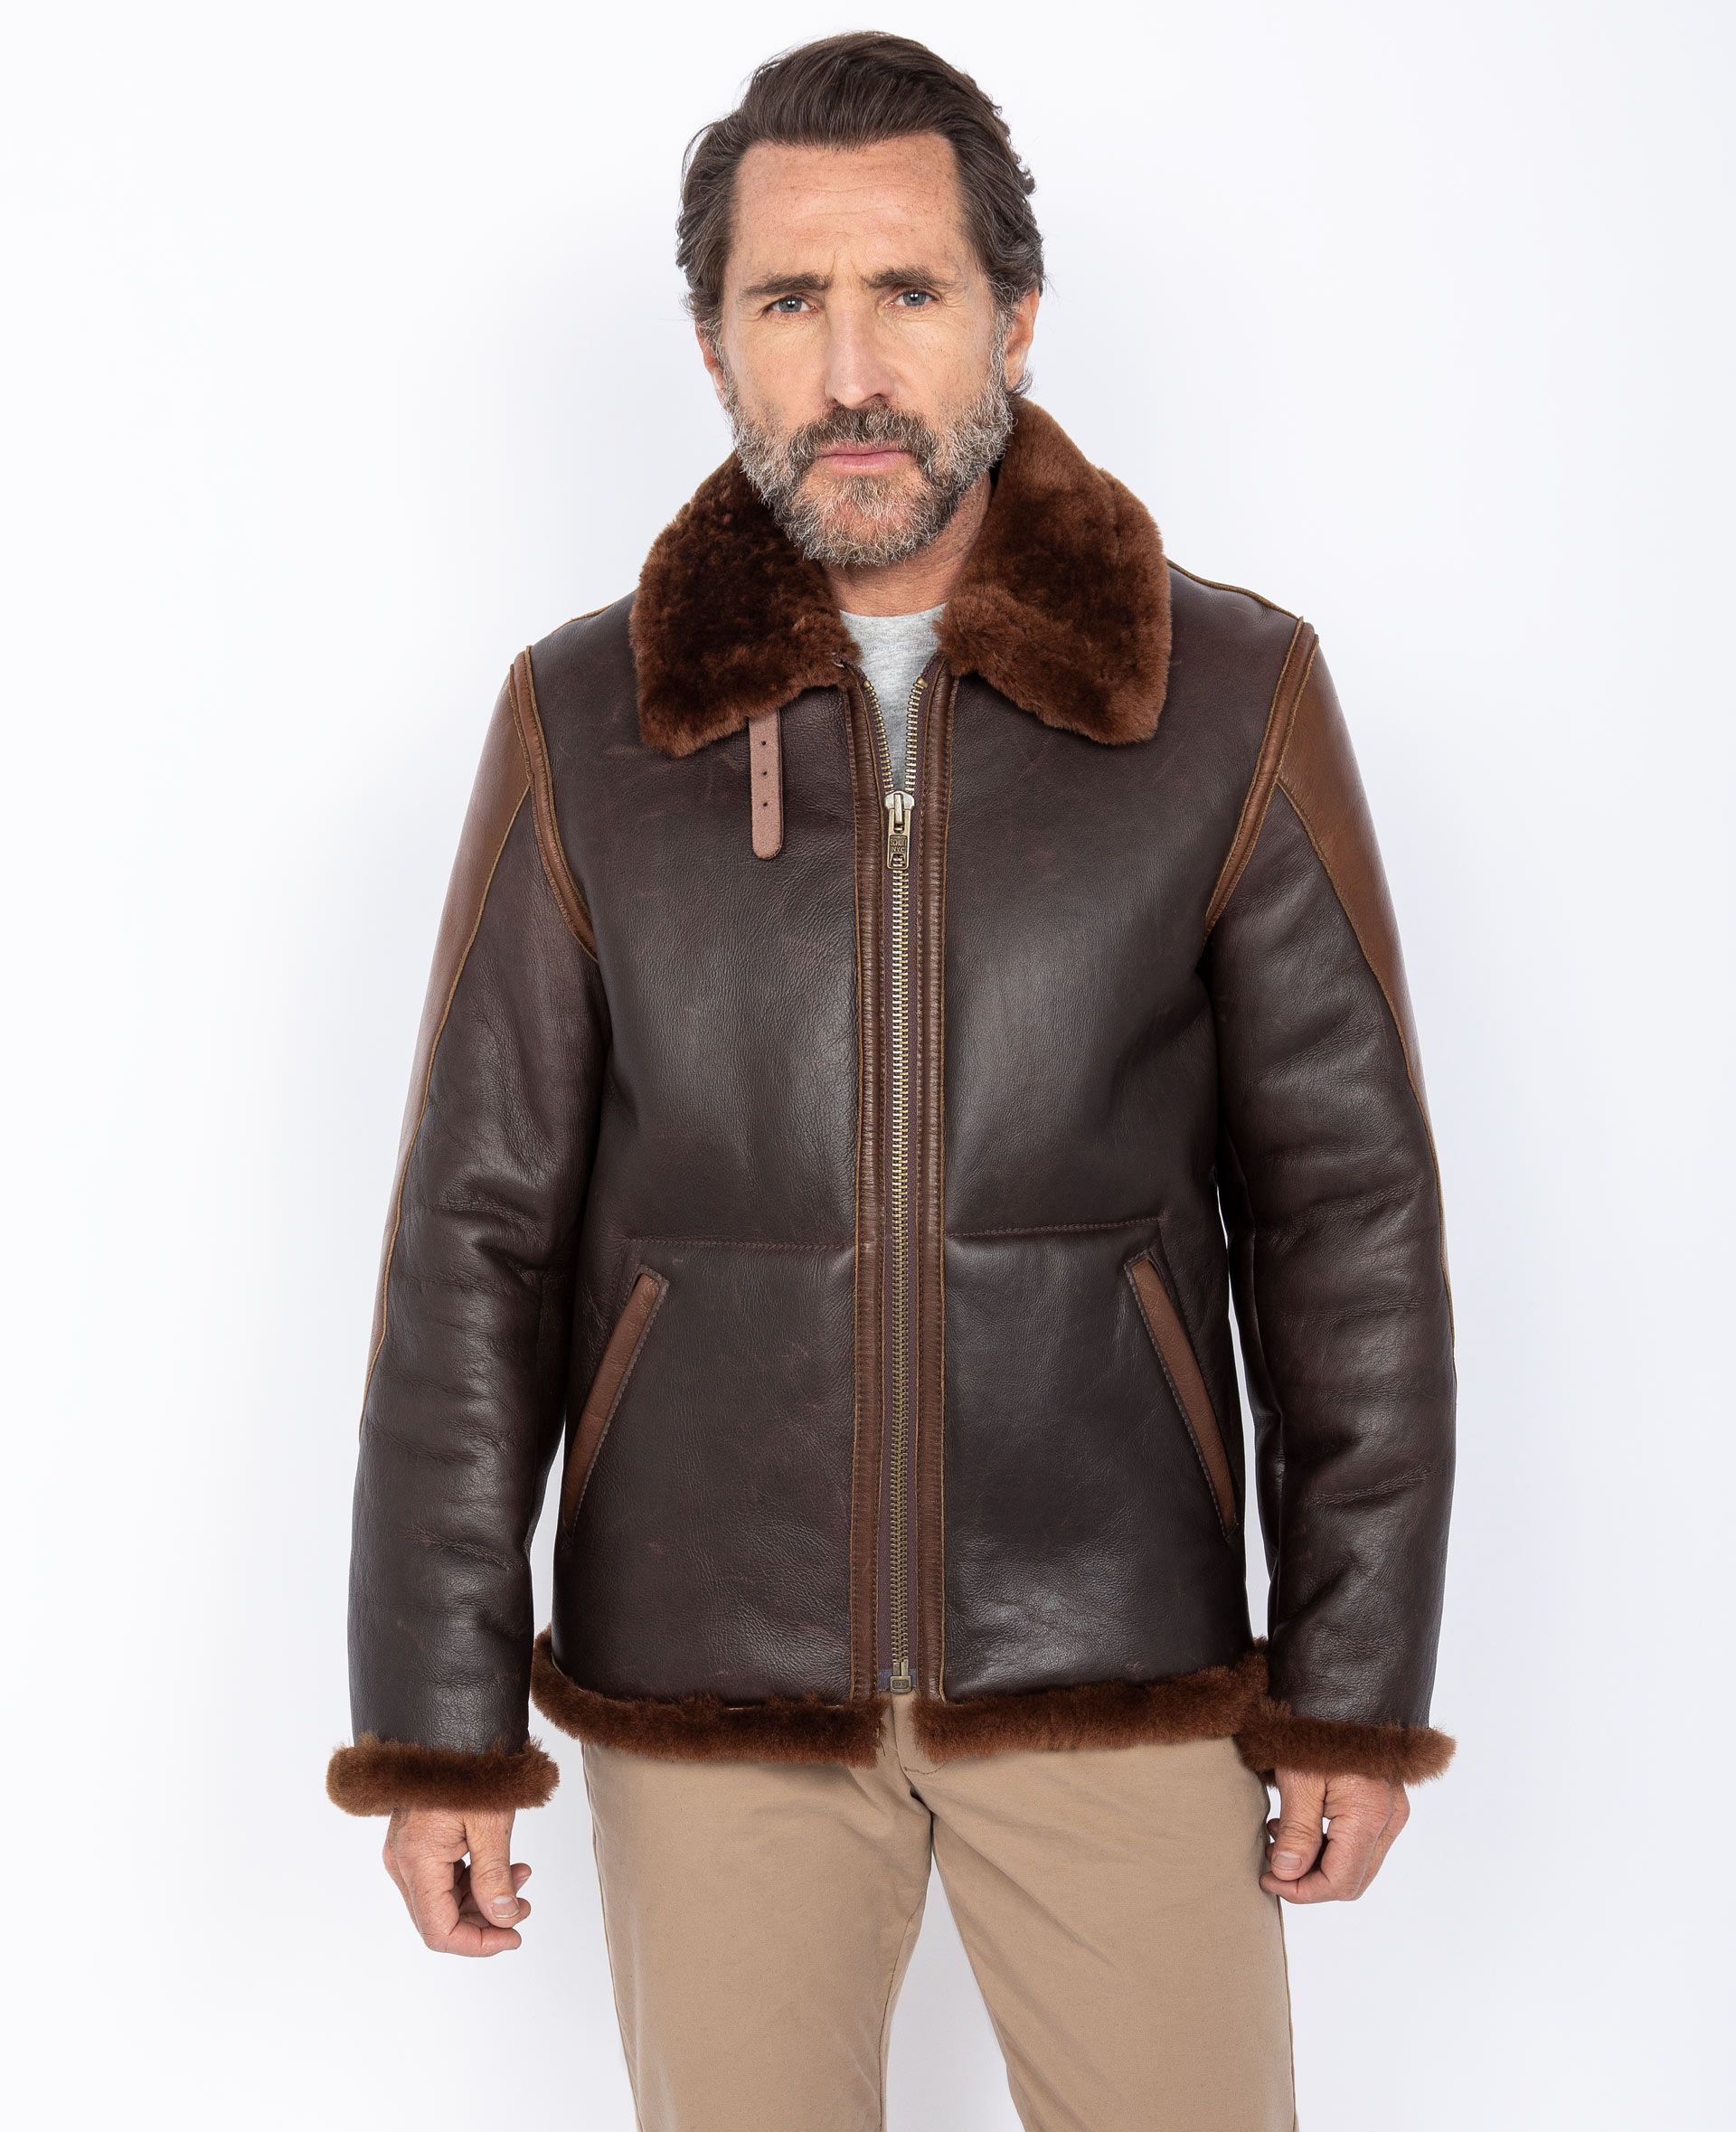 Buy B-3 bomber jacket mythical USA, sheepskin leather man 100% sheepskin  leather | Schott NYC